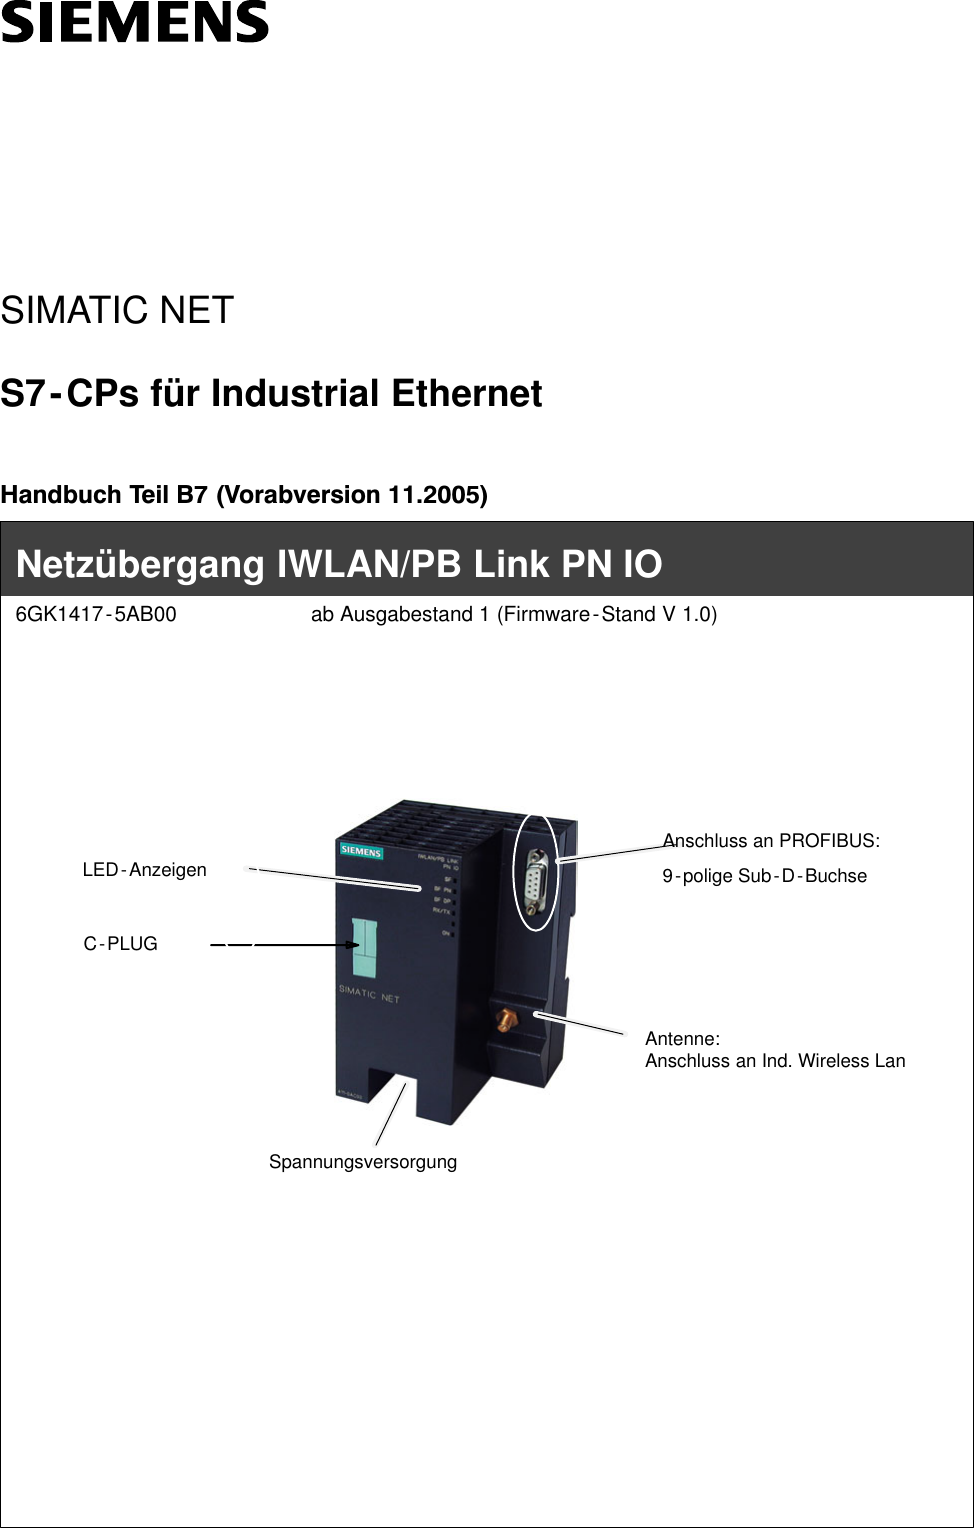 SIMATIC NETS7-CPs für Industrial EthernetHandbuch Teil B7 (Vorabversion 11.2005)LED-AnzeigenNetzübergang IWLAN/PB Link PN IO6GK1417-5AB00 ab Ausgabestand 1 (Firmware-Stand V 1.0)Antenne:Anschluss an Ind. Wireless LanAnschluss an PROFIBUS:9-polige Sub-D-BuchseC-PLUGSpannungsversorgung